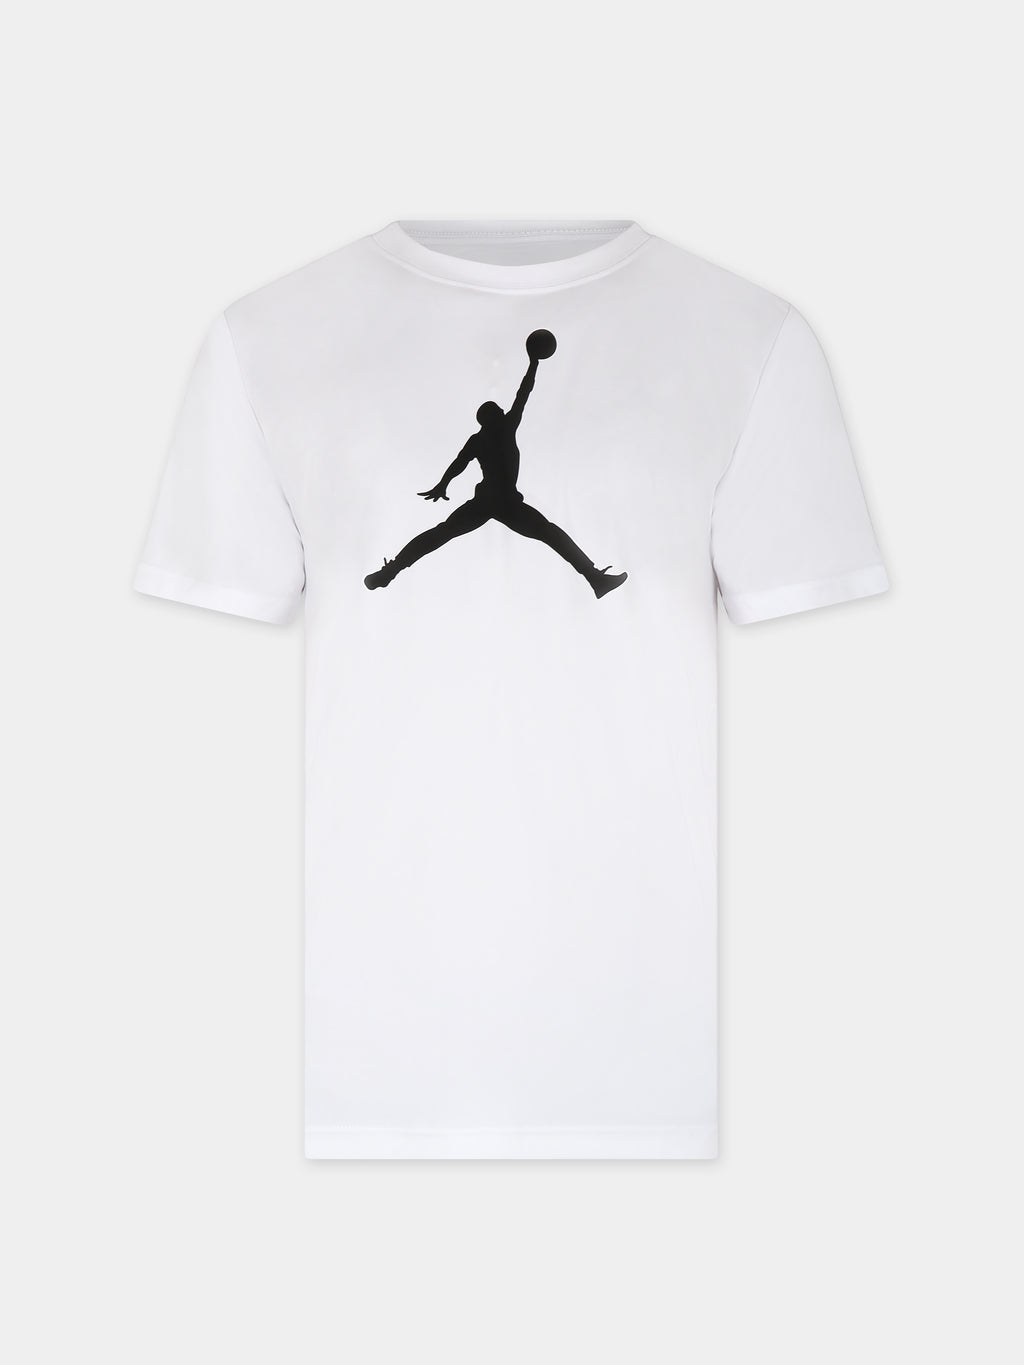 T-shirt bianca per bambino con Jumpman